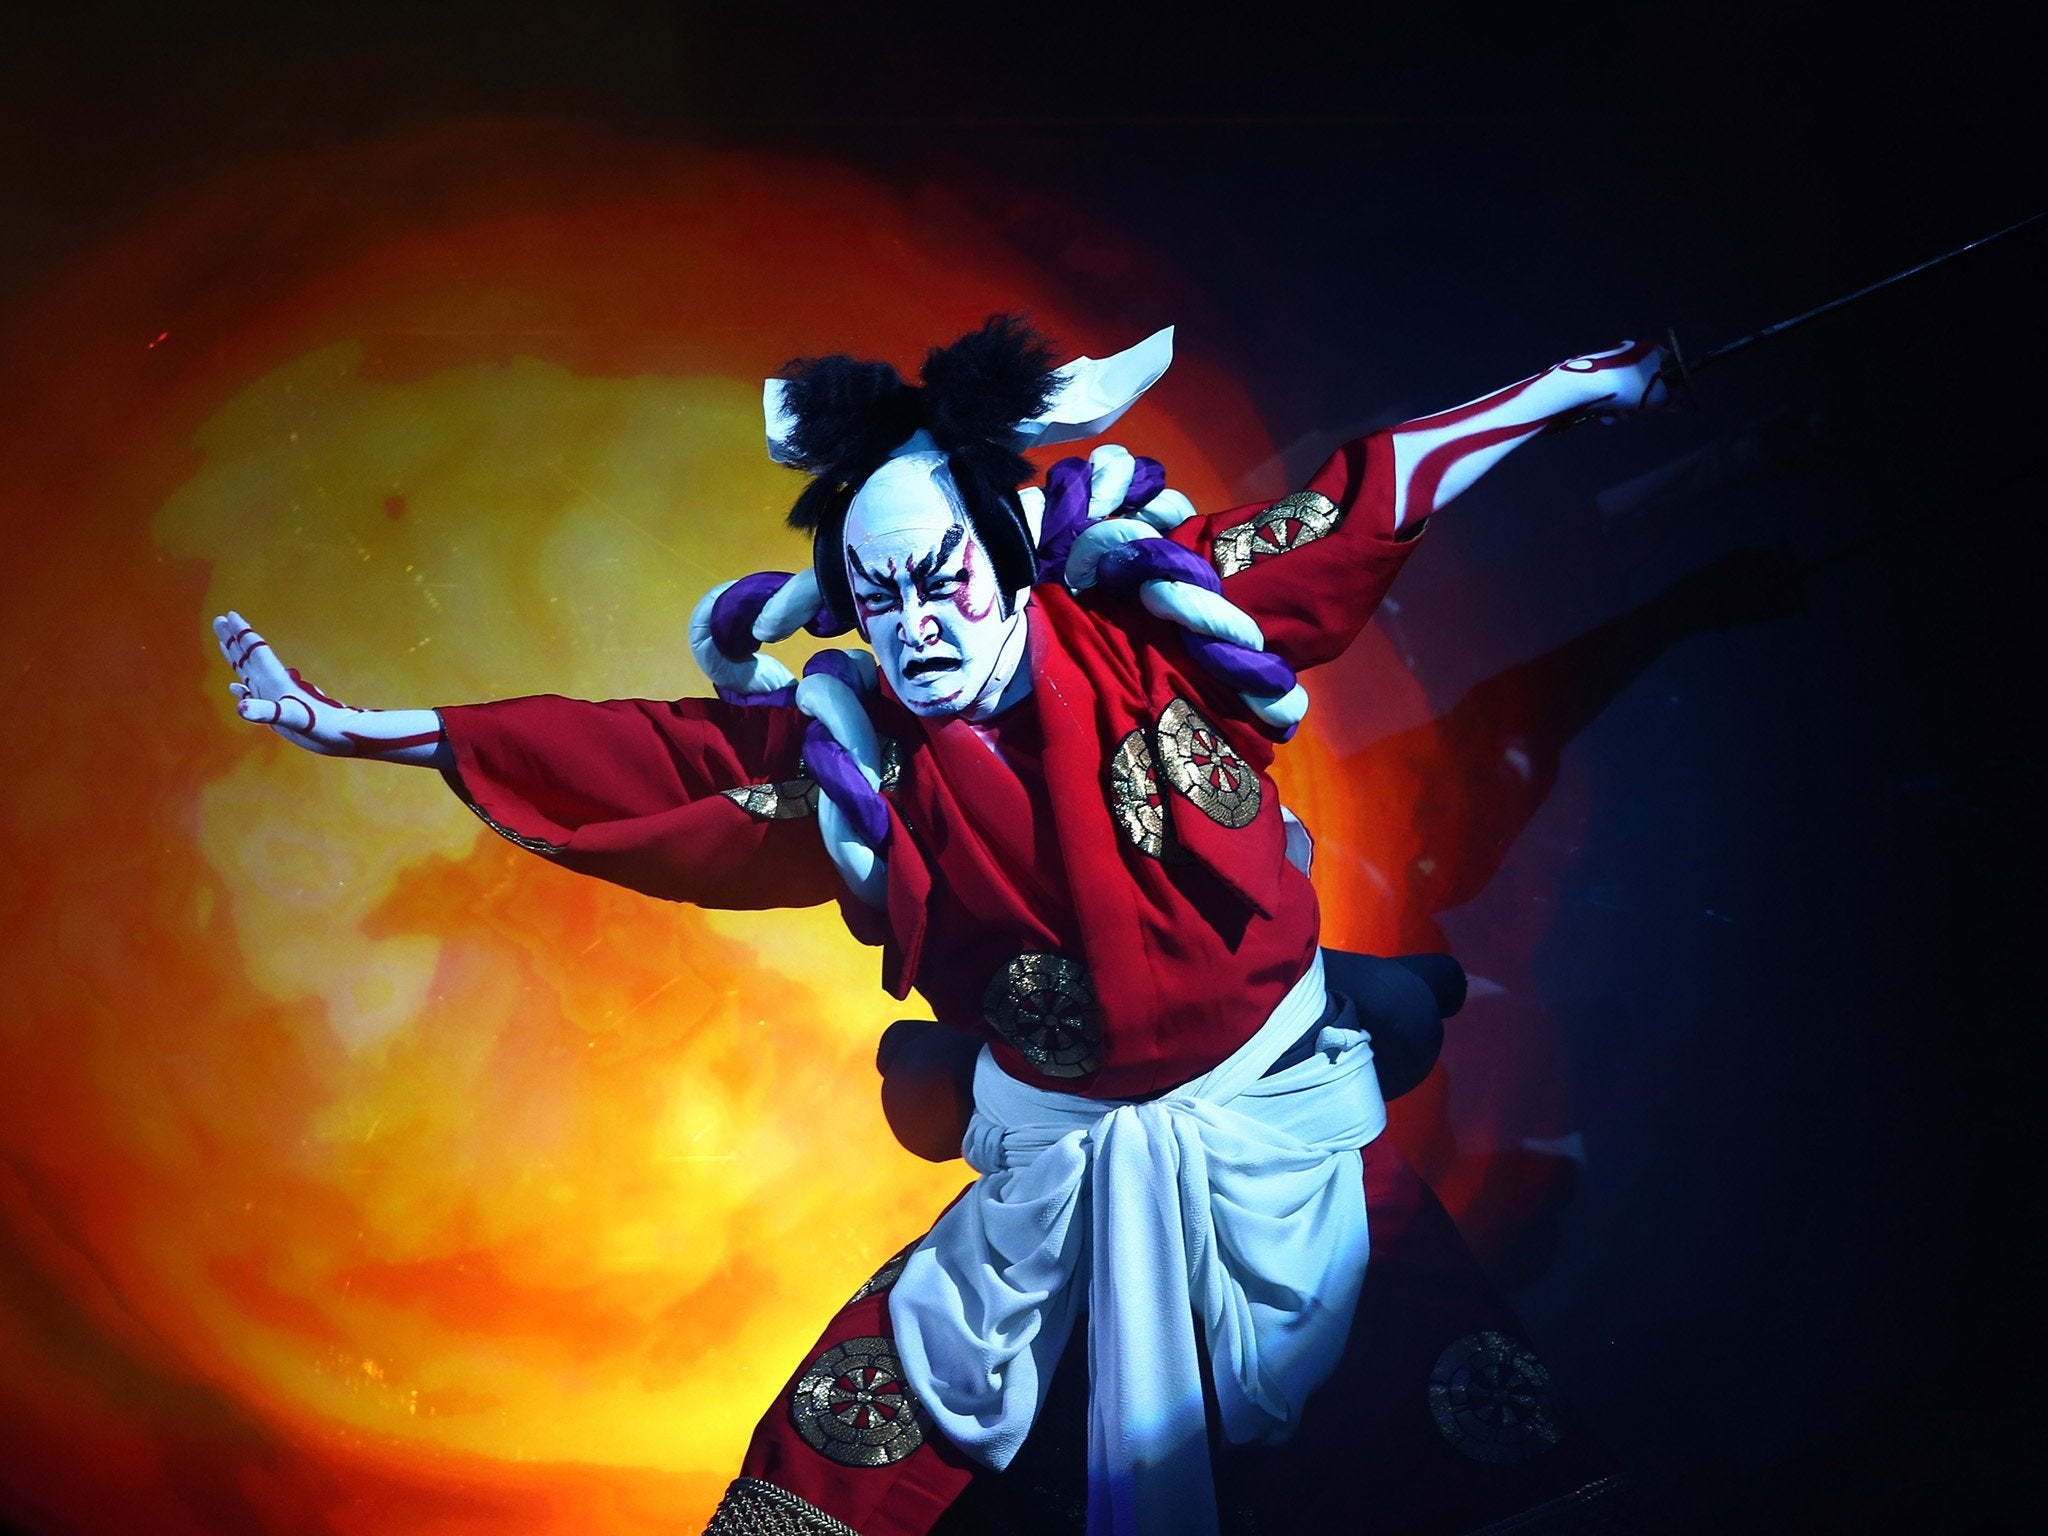 traditional kabuki theatre makeup